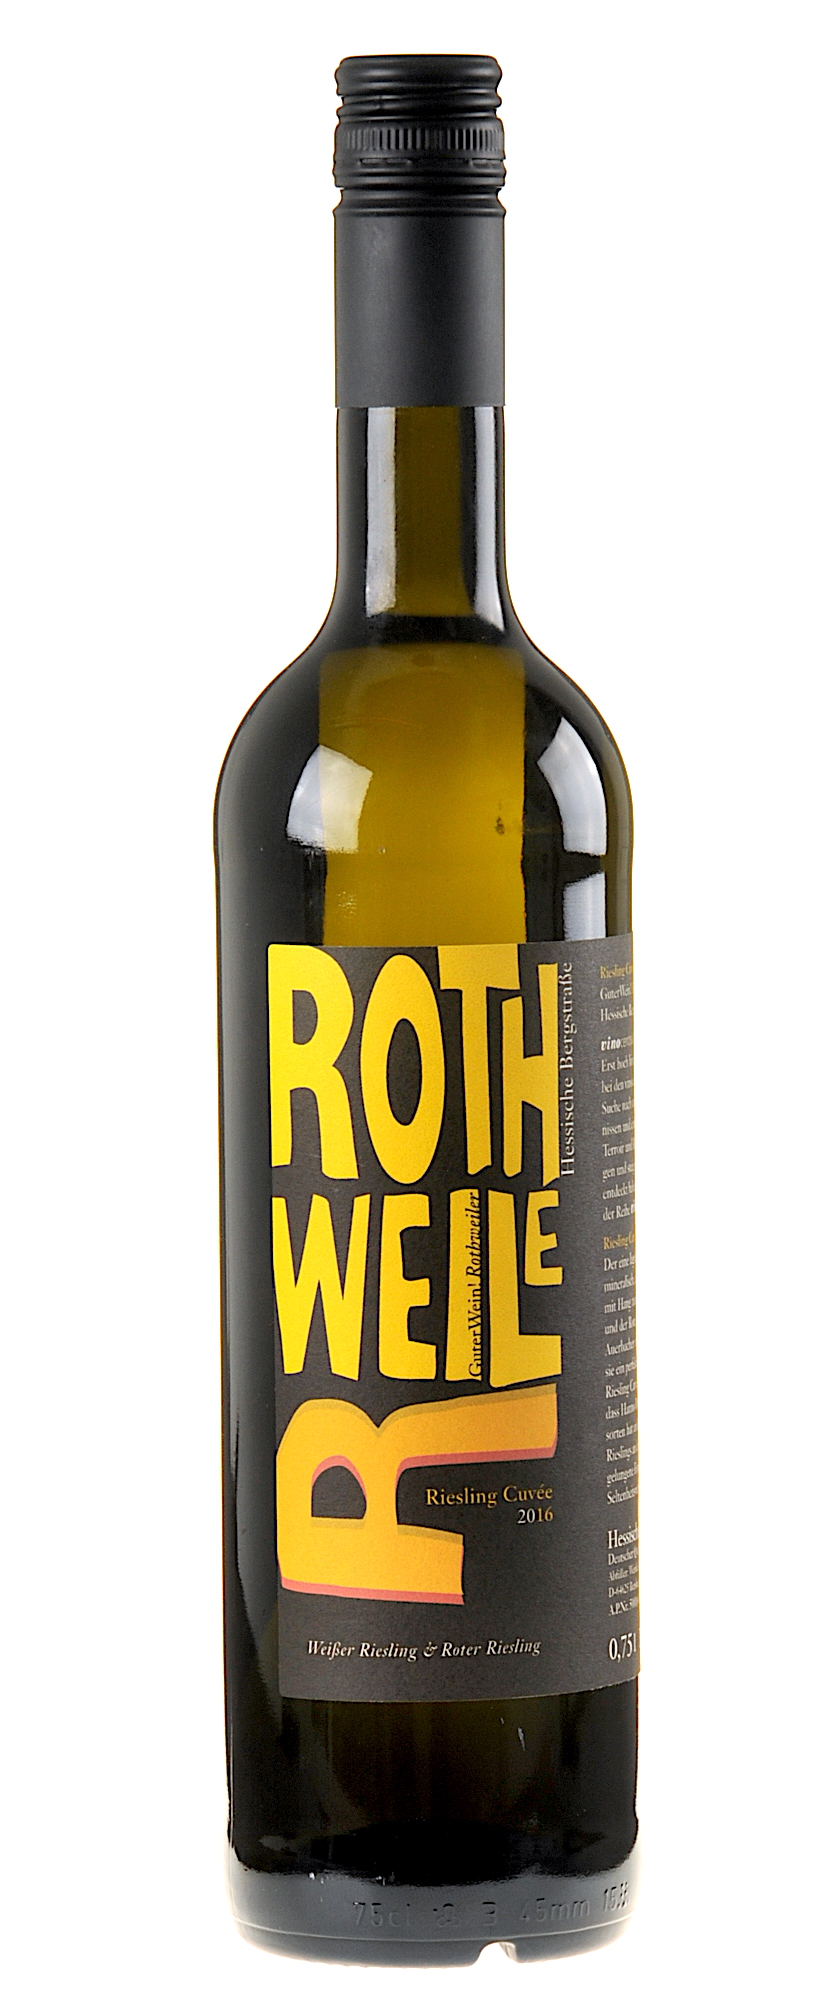 Weingut Rothweiler Riesling Cuvee 2016